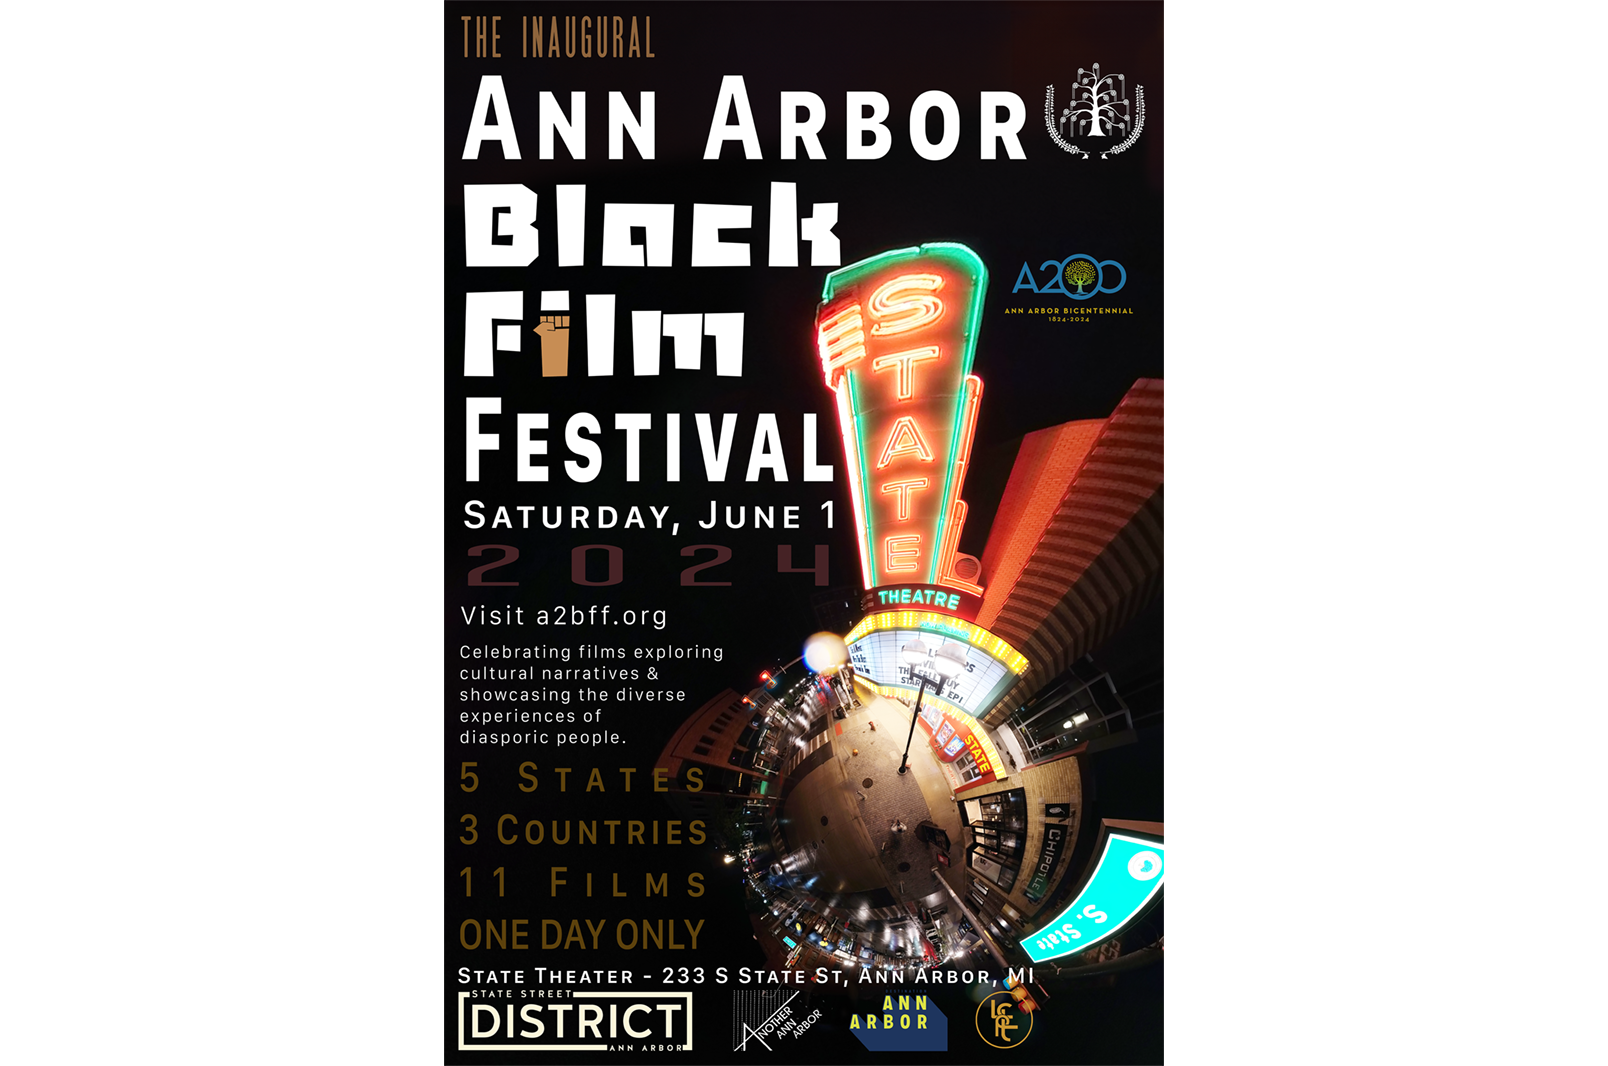 A poster for the Ann Arbor Black Film Festival.